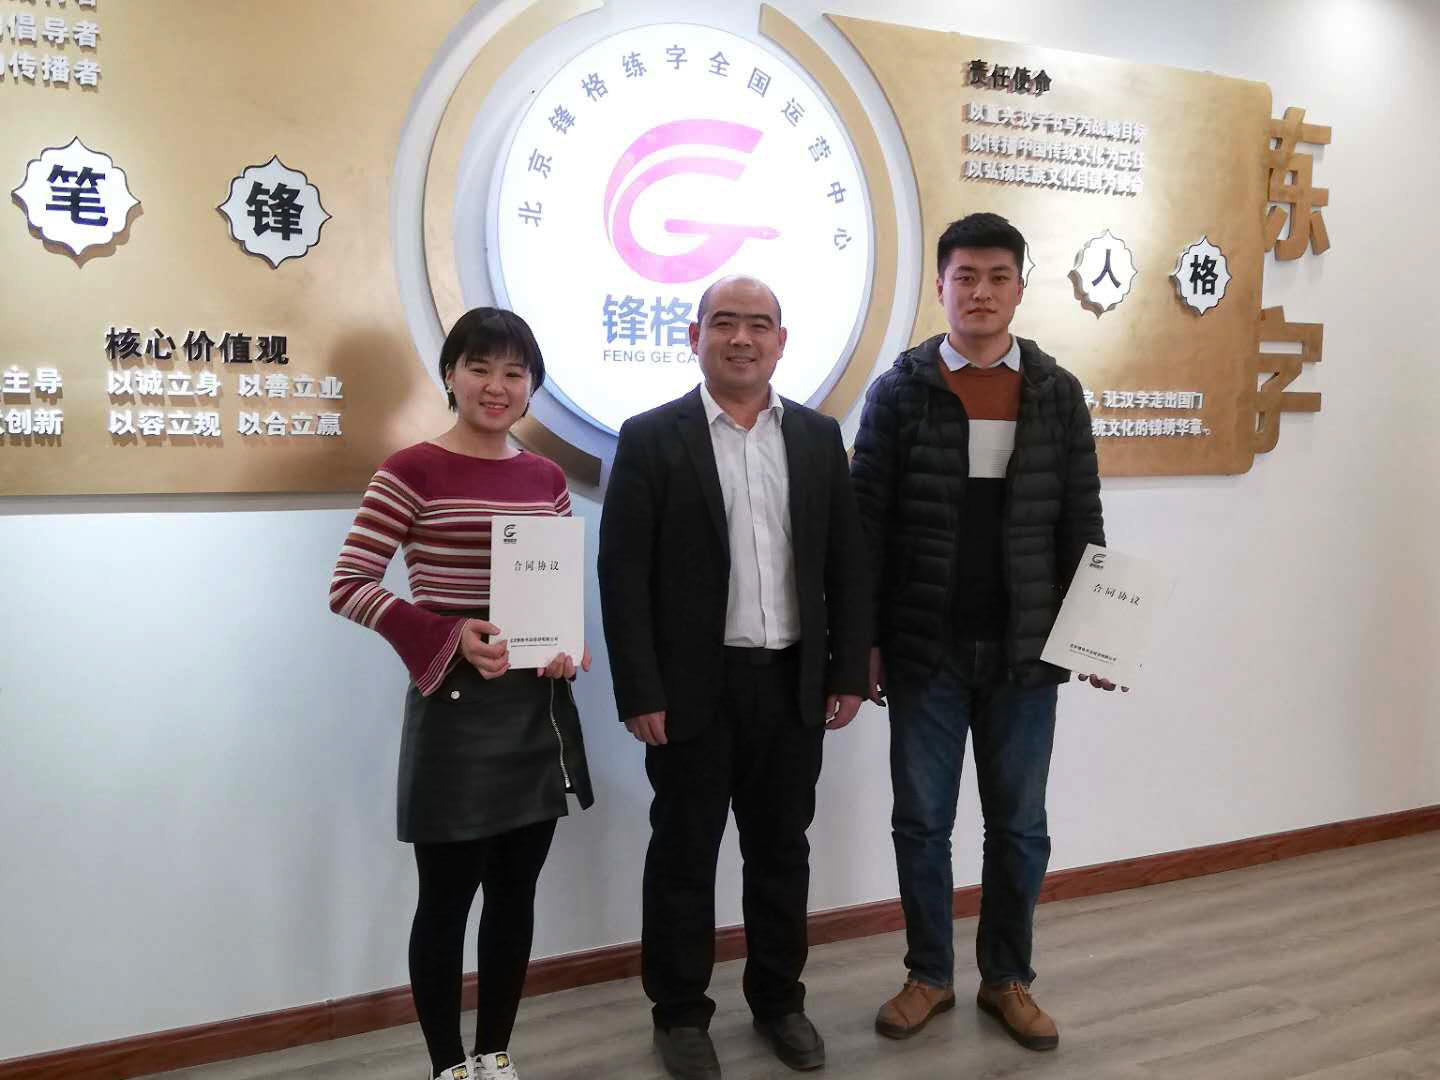 恭喜刘老师夫妻签下锋格练字河北省霸州市和固安县代理！